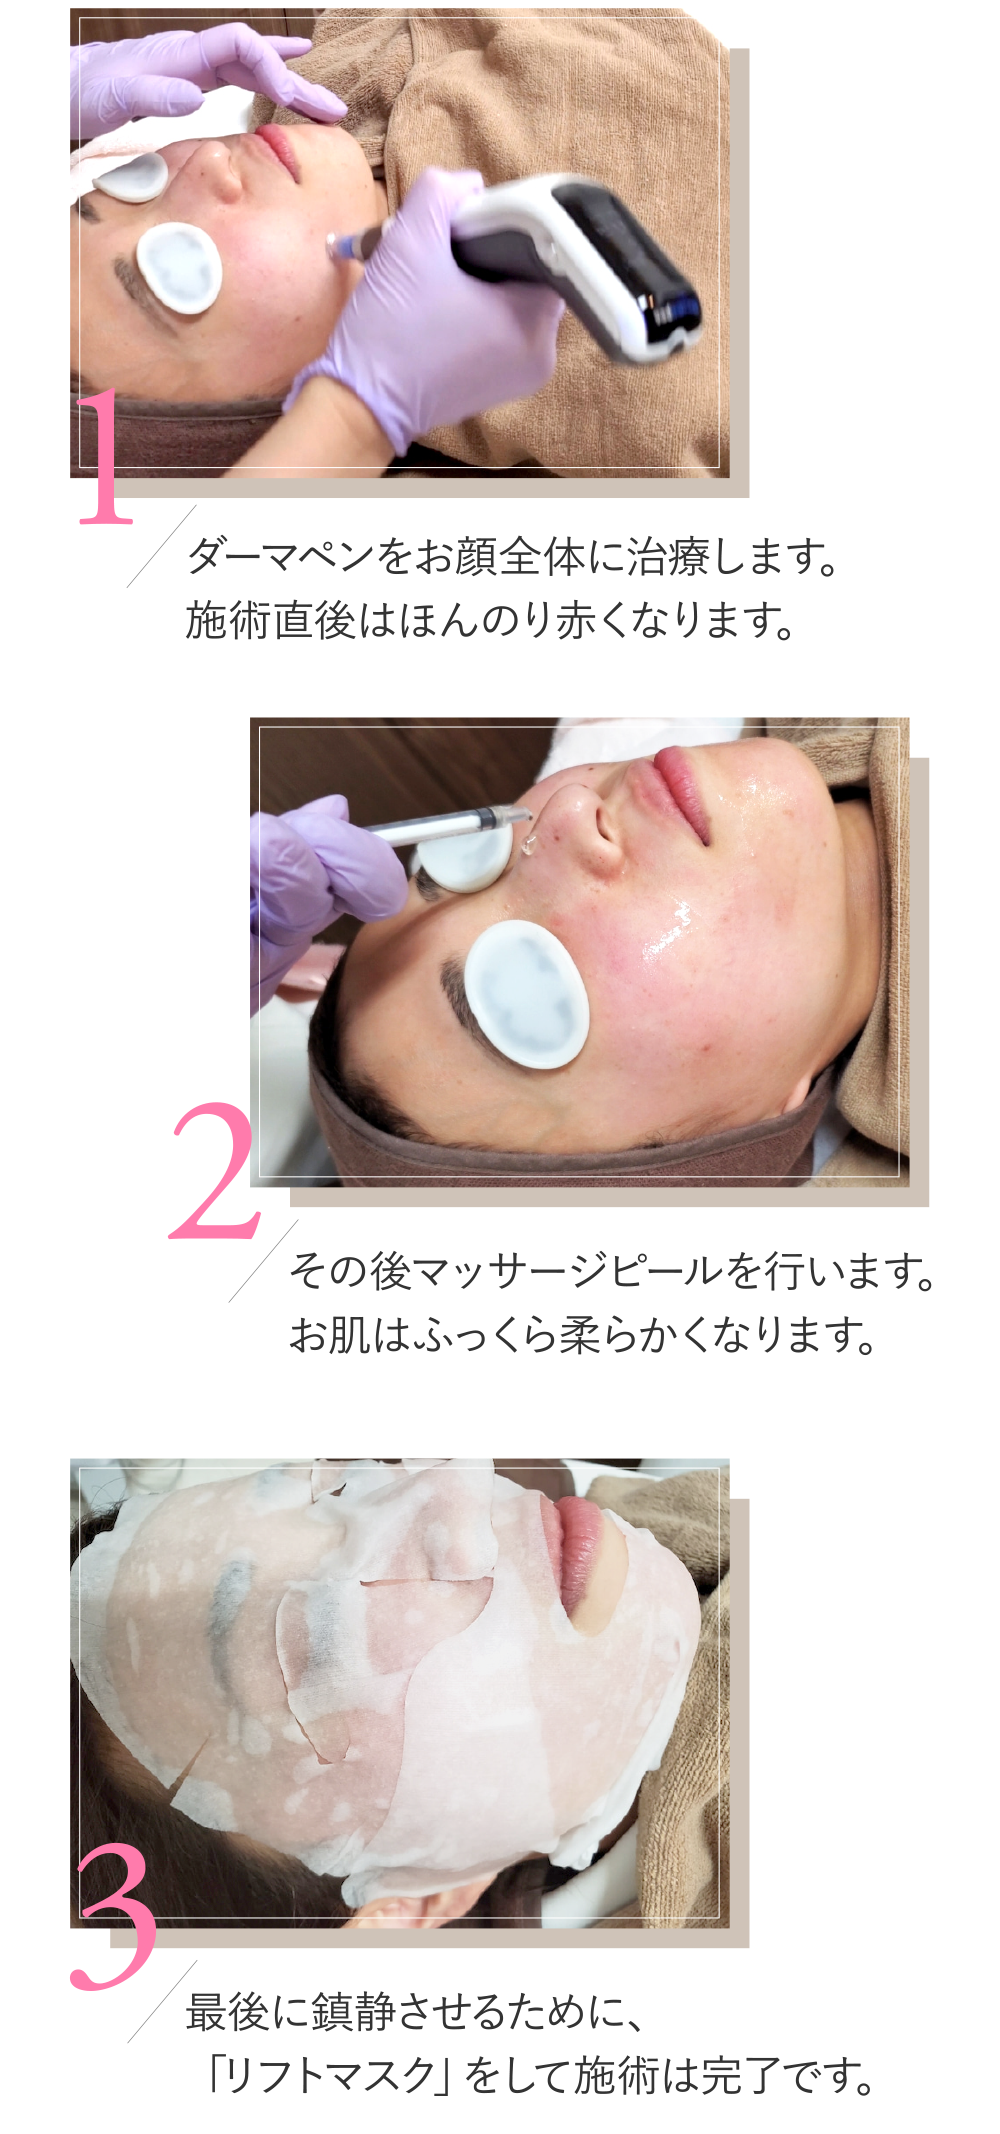 (1)ダーマペンをお顔全体に治療します。施術直後はほんのり赤くなります。(2)その後マッサージピールを行います。お肌はふっくら柔らかくなります。(3)最後に鎮静させるために、「リフトマスク」をして施術は完了です。